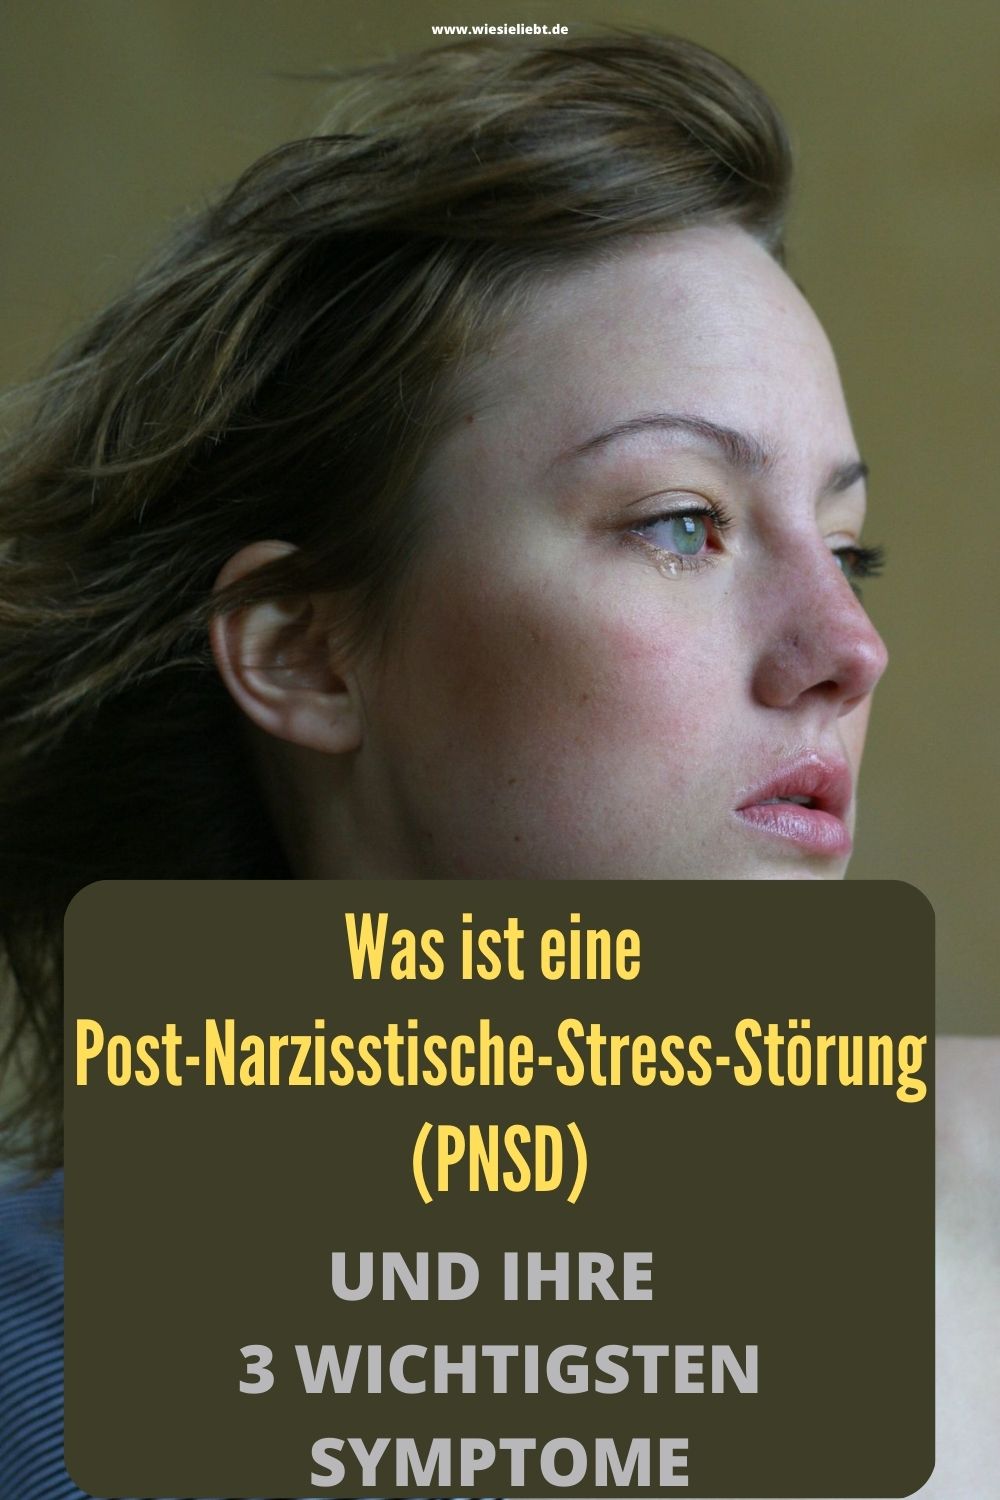 Was-ist-eine-Post-Narzisstische-Stress-Stoerung-PNSD-und-ihre-3-wichtigsten-Symptome